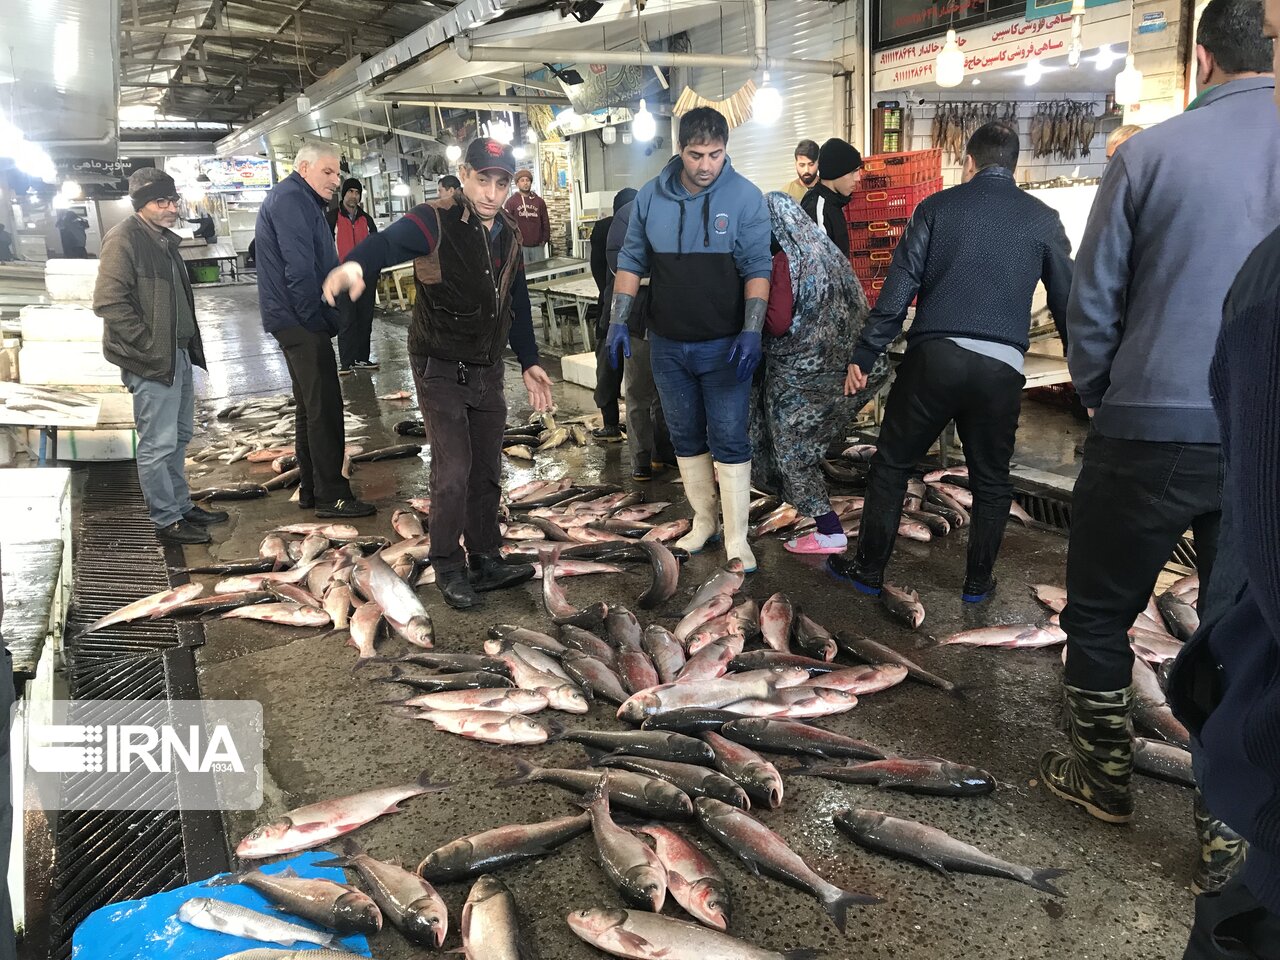 رونق بازار ماهی دریایی مازندران با کپورهای درشت/قیمت بدون تغییر نسبت به پارسال